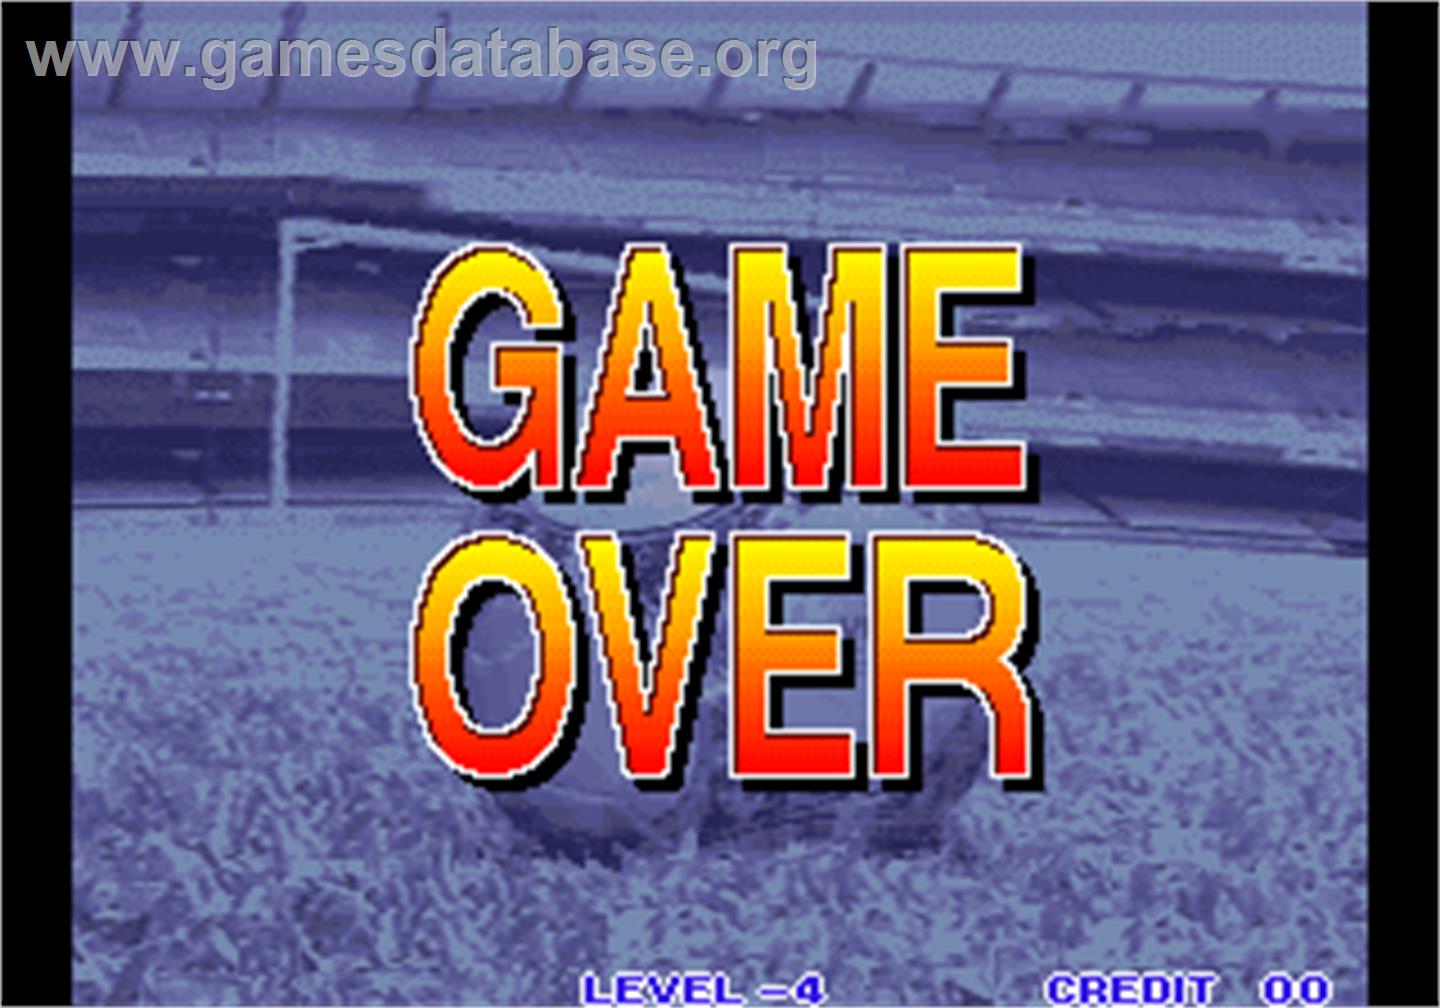 Goal! Goal! Goal! - Arcade - Artwork - Game Over Screen